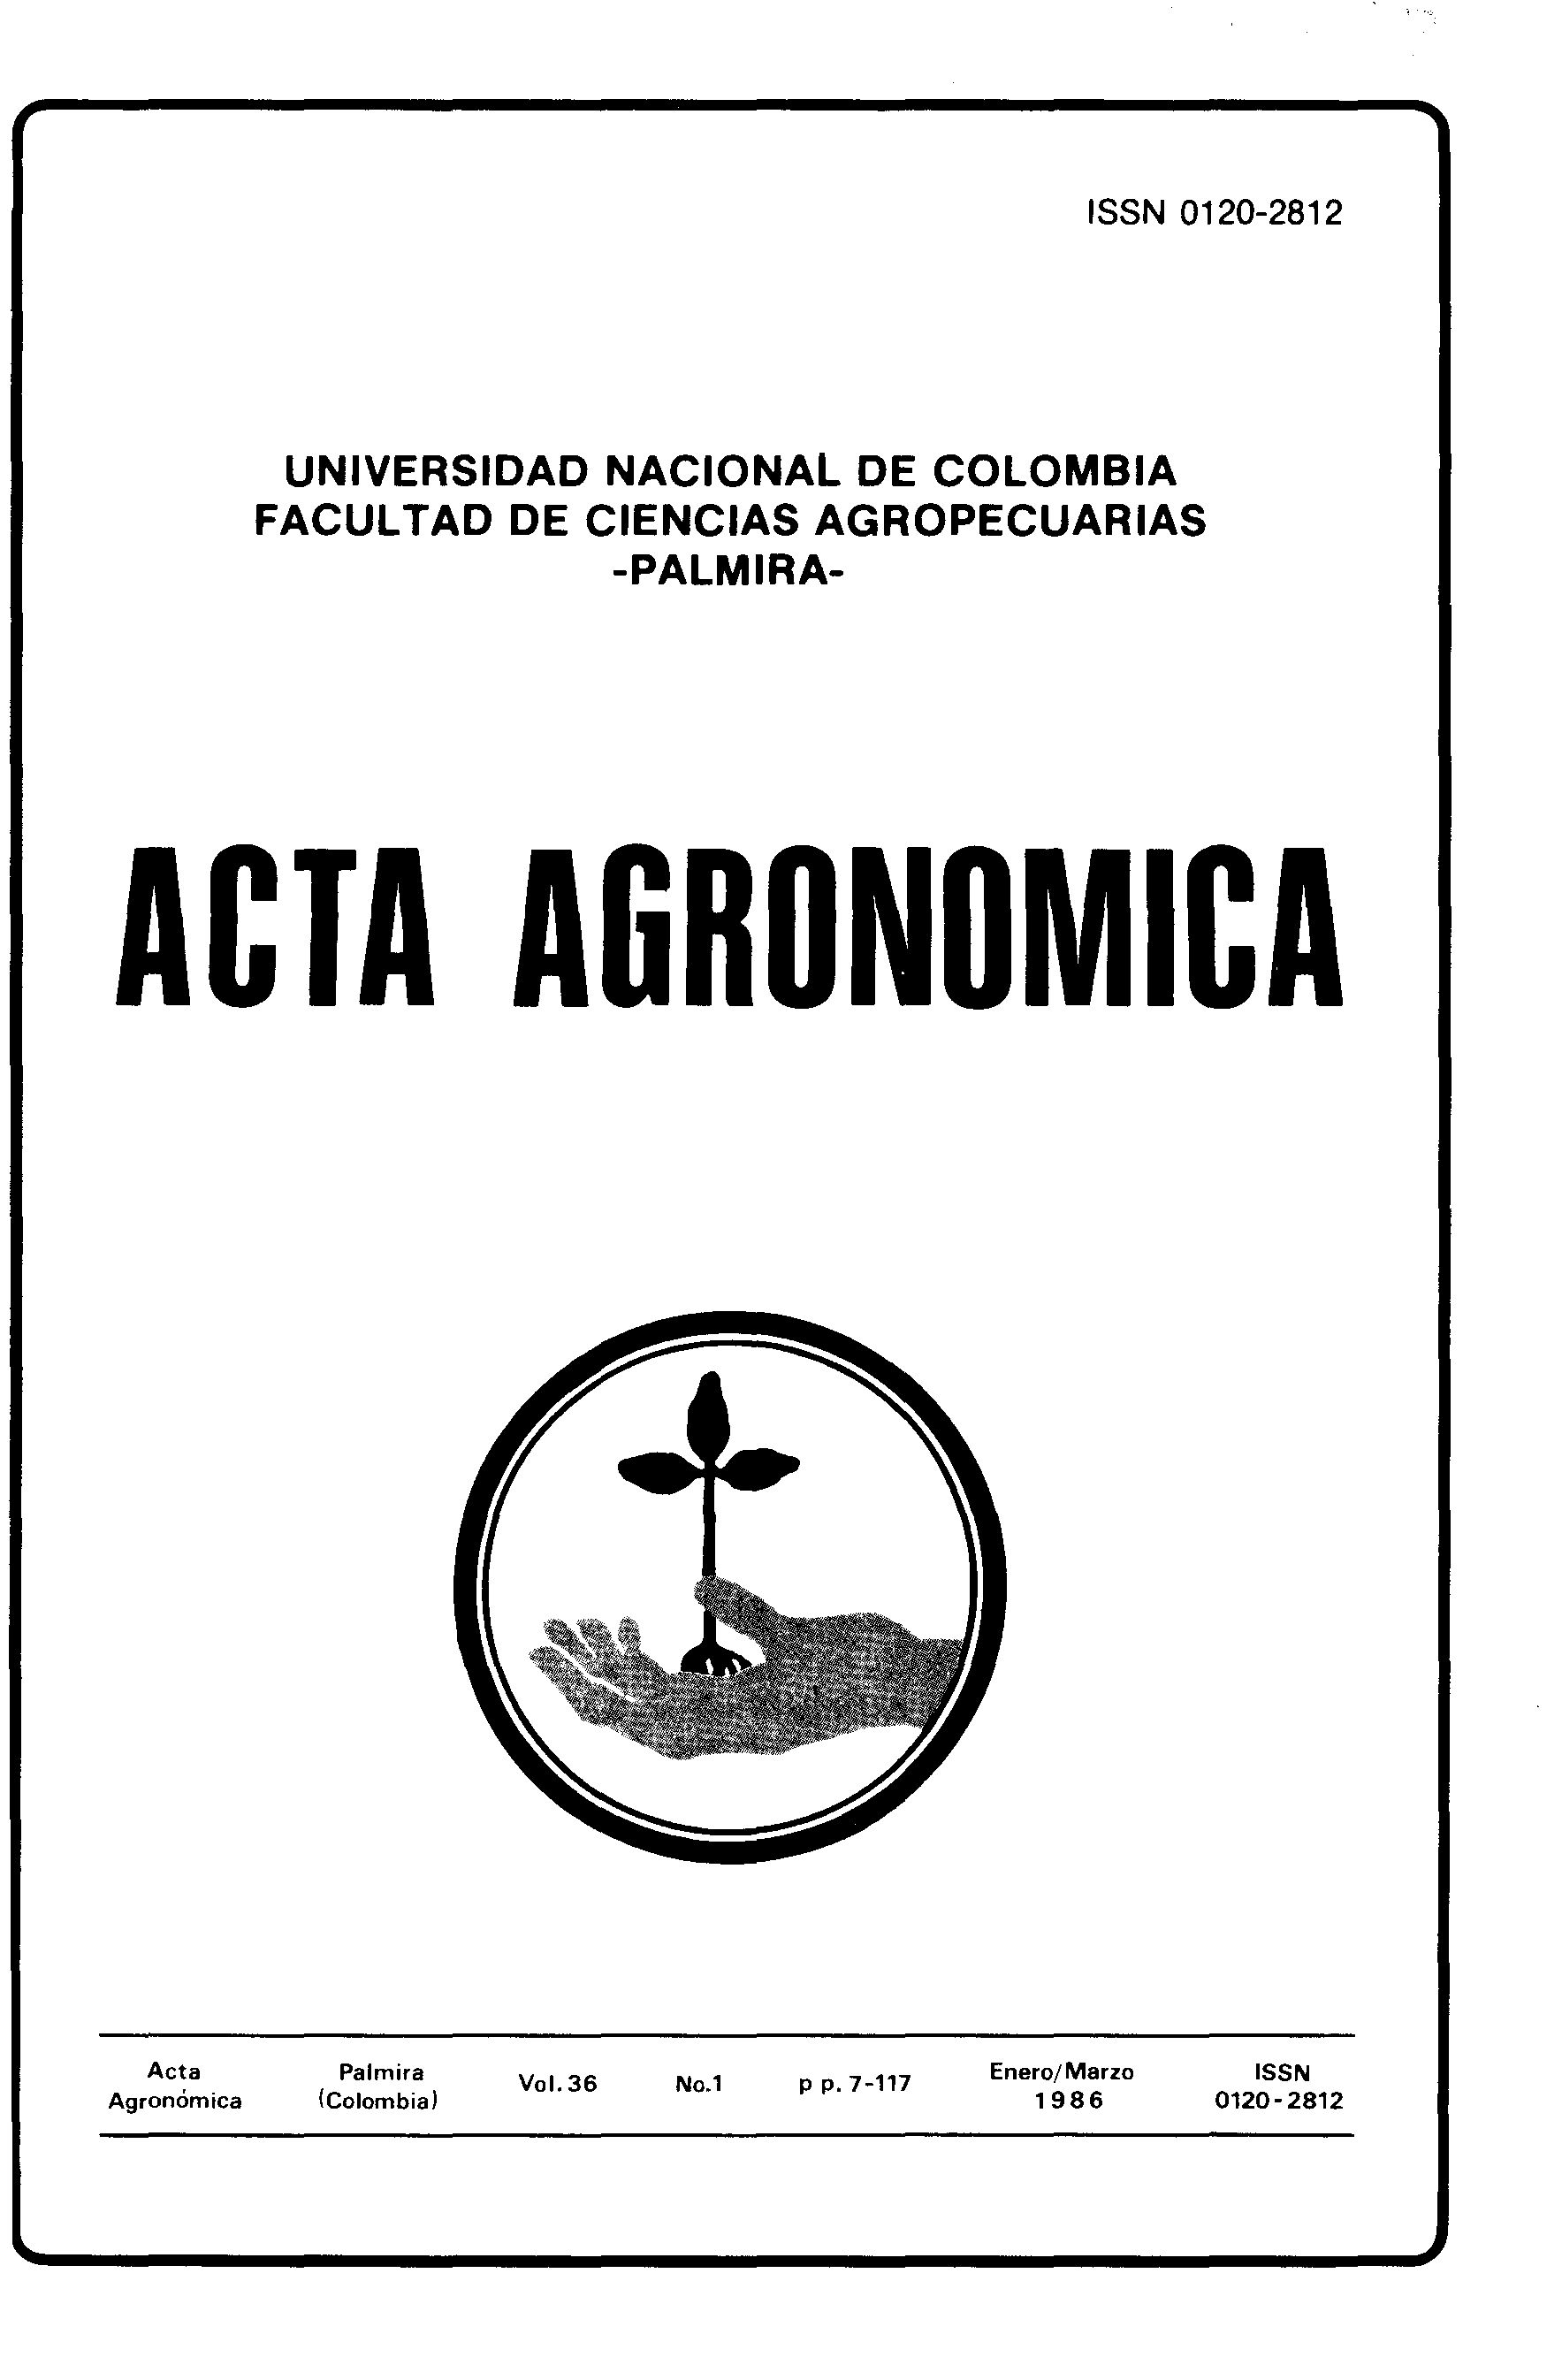 Acta Agronómica, Vol 36, No 1 (1986)